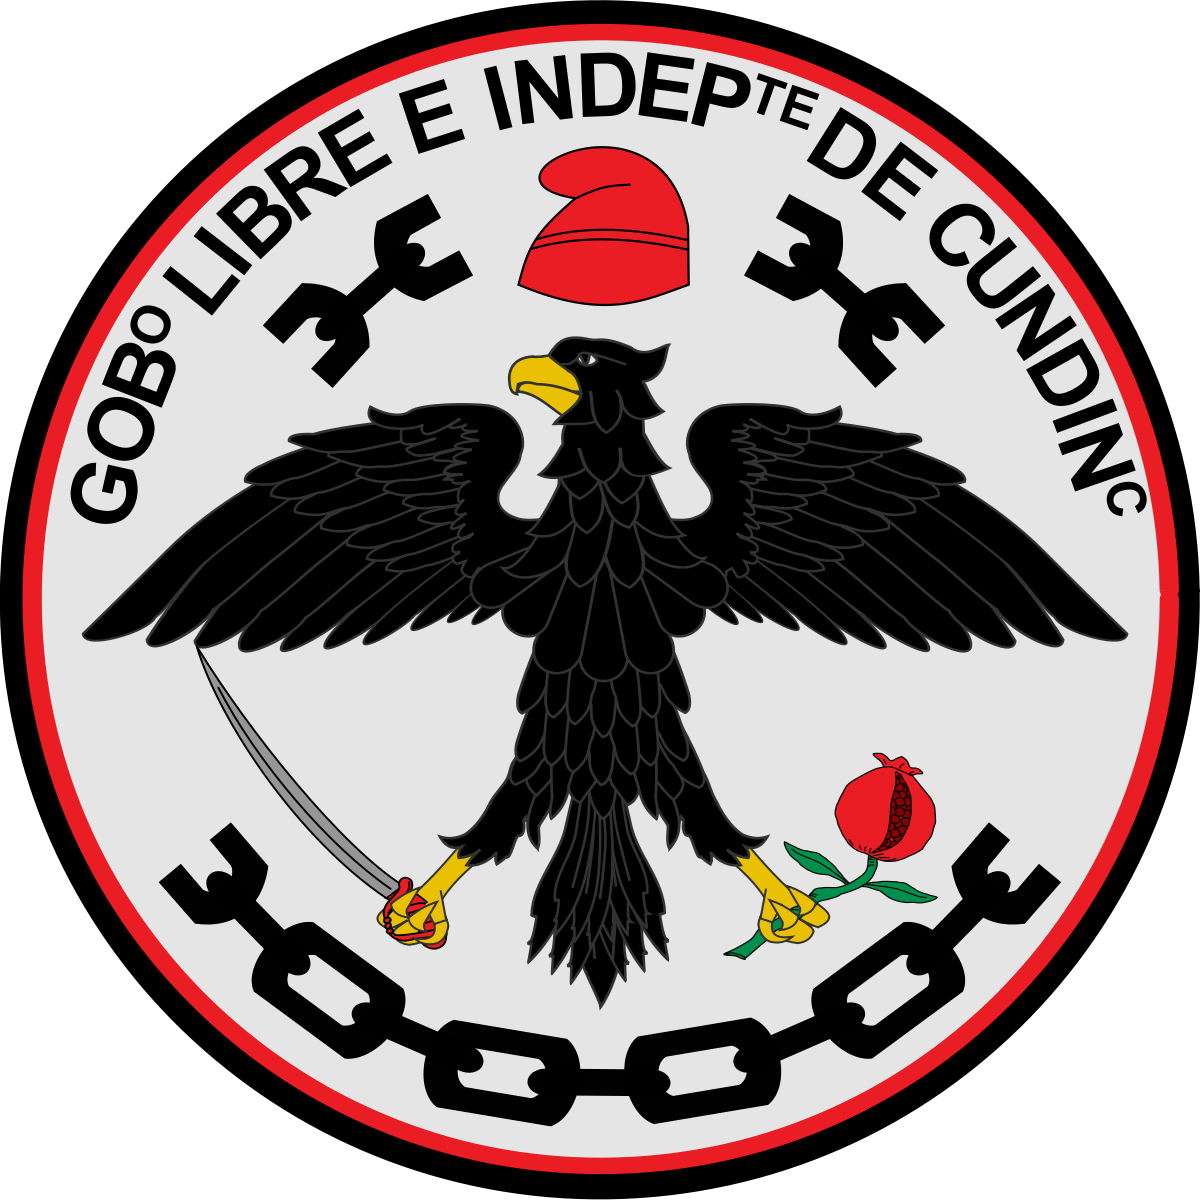 Gobernación de Cundinamarca